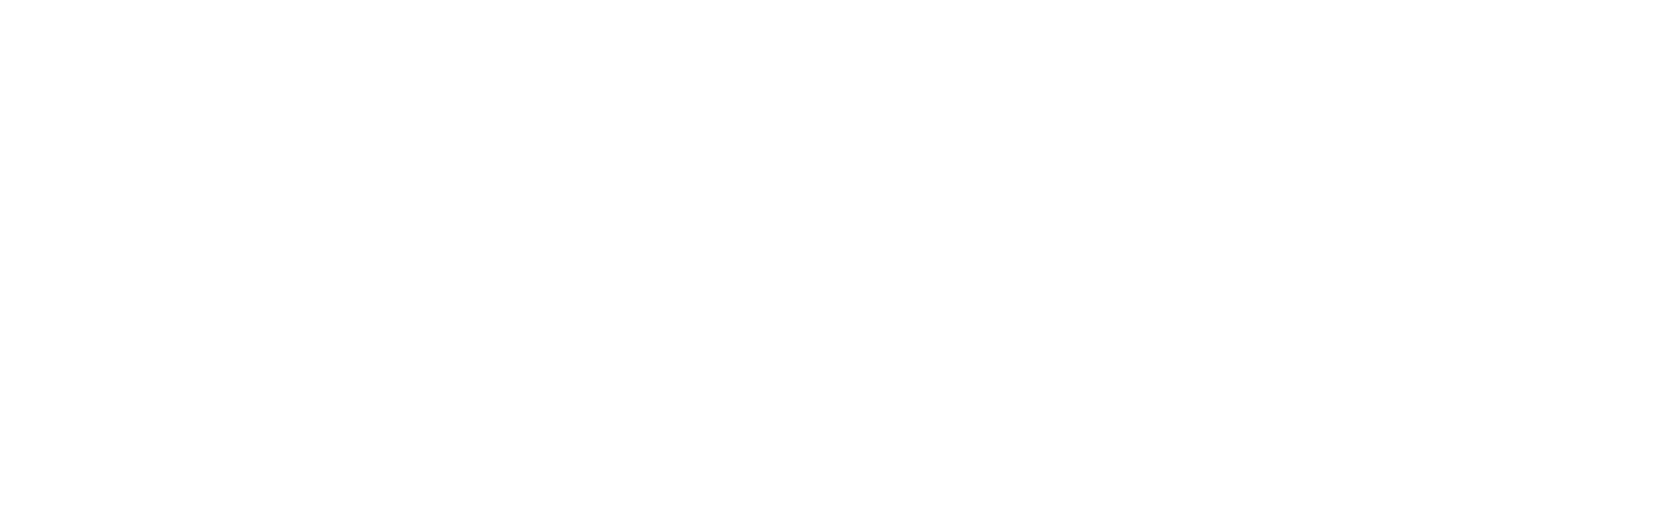 knix logo-1